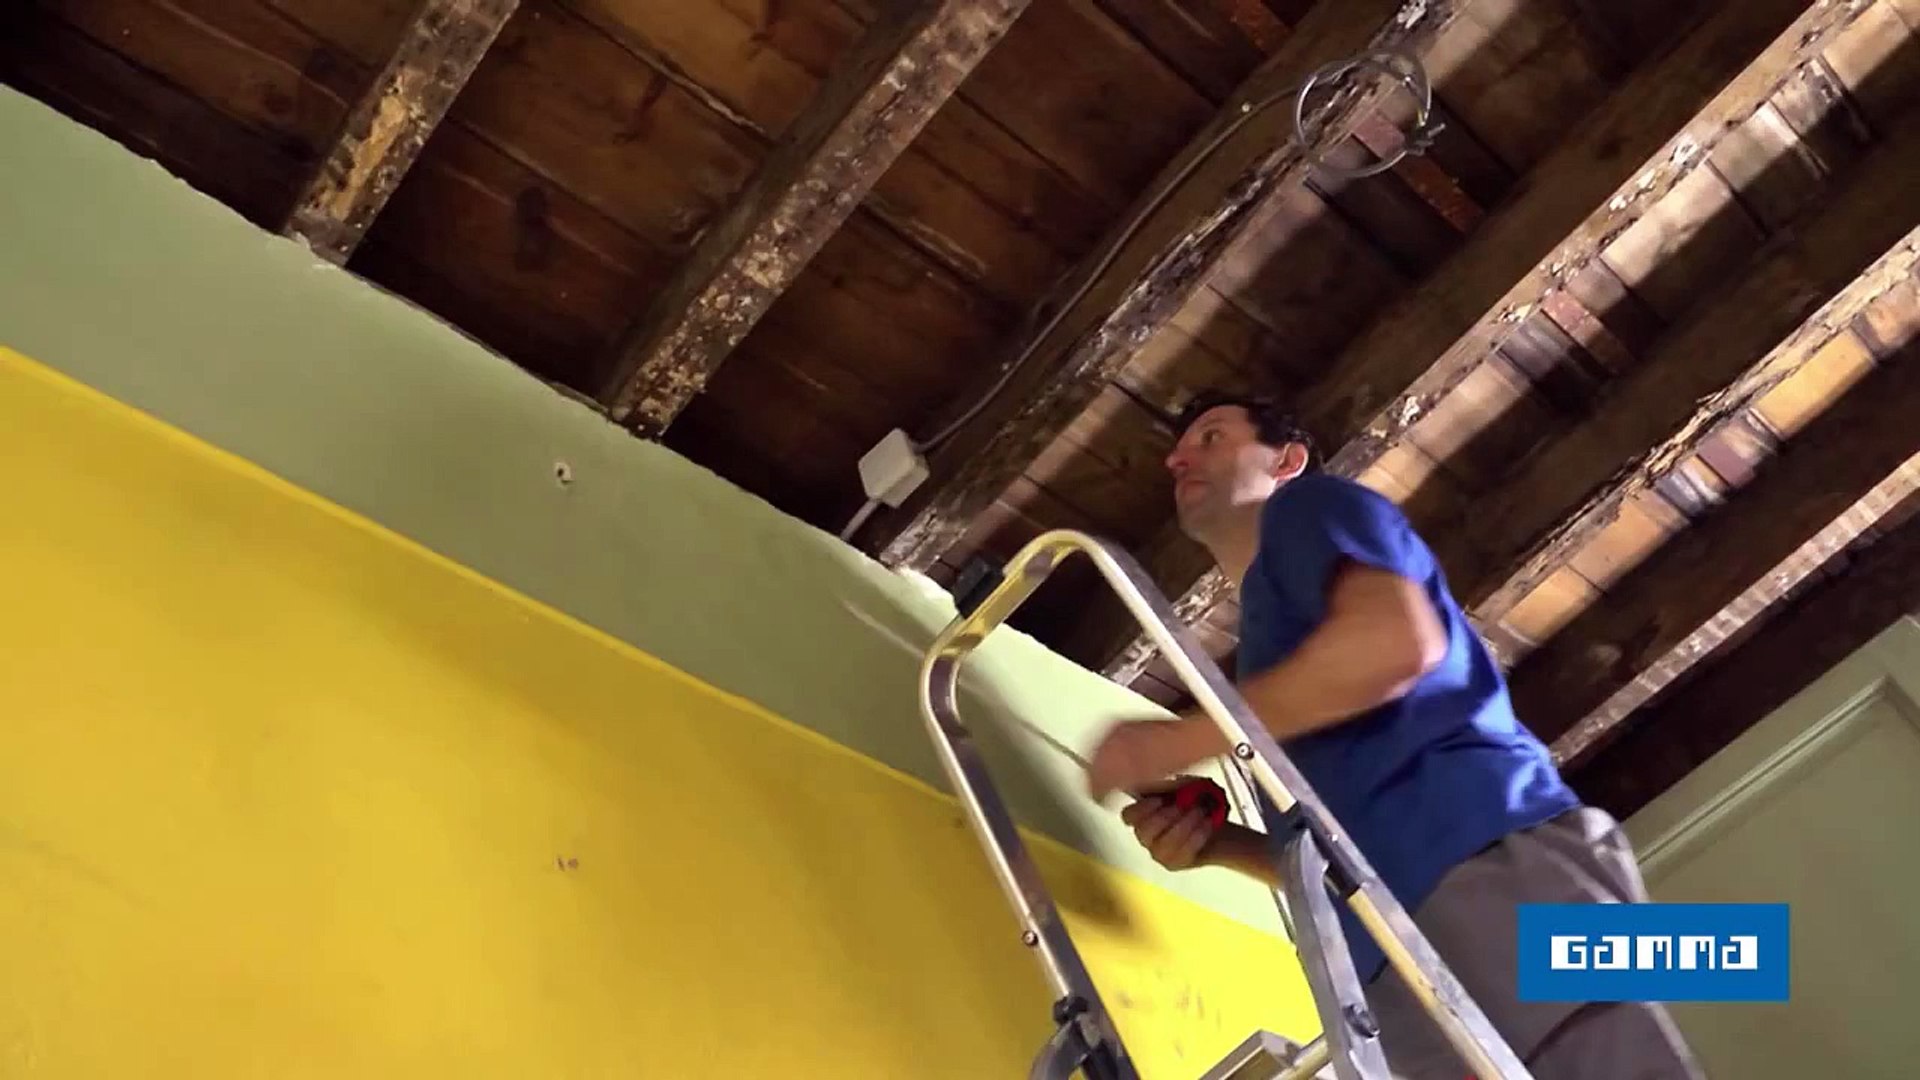 Poser un lambris au plafond - Vidéo bricolage | GAMMA Belgique - video  Dailymotion